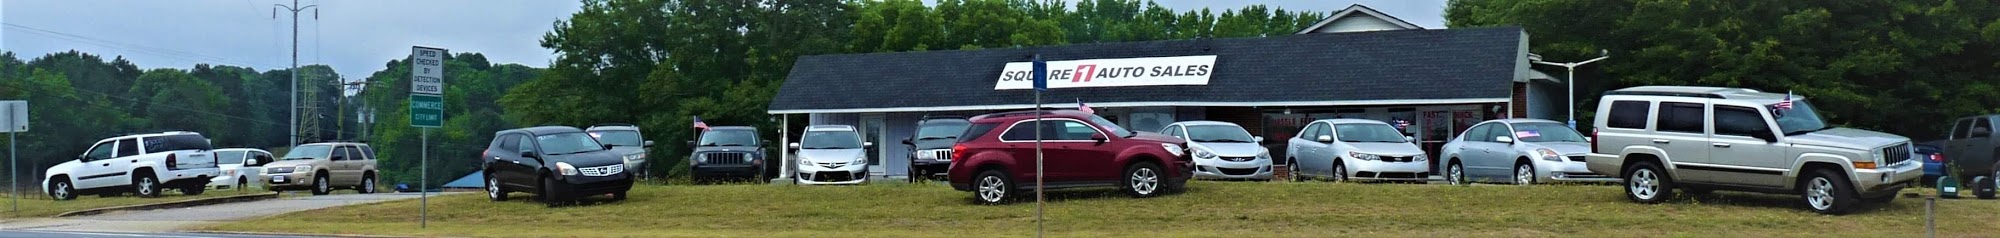 Square 1 Auto Sales